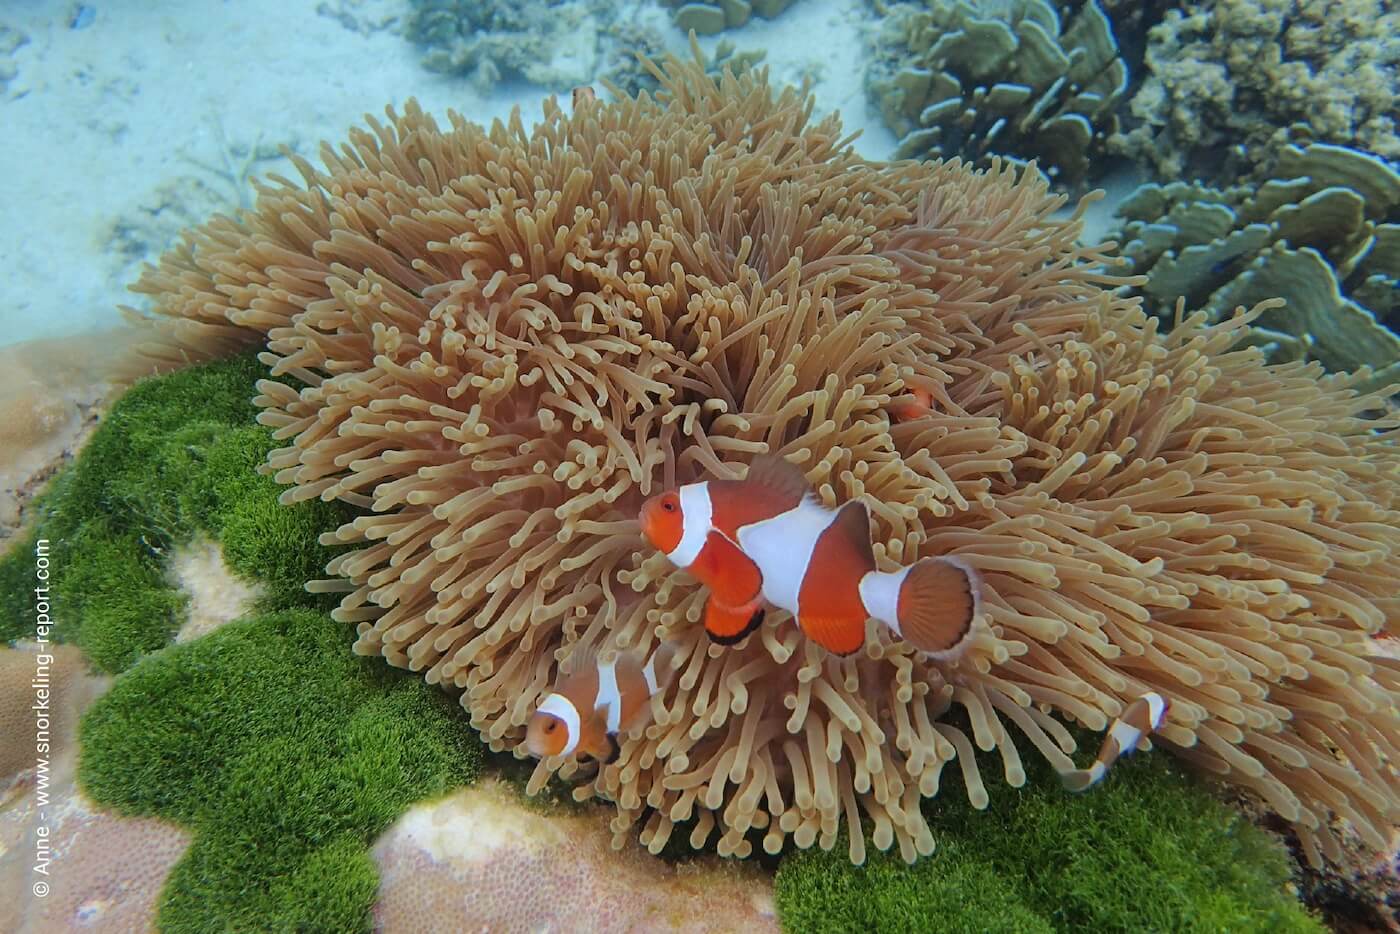 Ocellaris aneonefish in a sea anemone in Koh Rok Nai